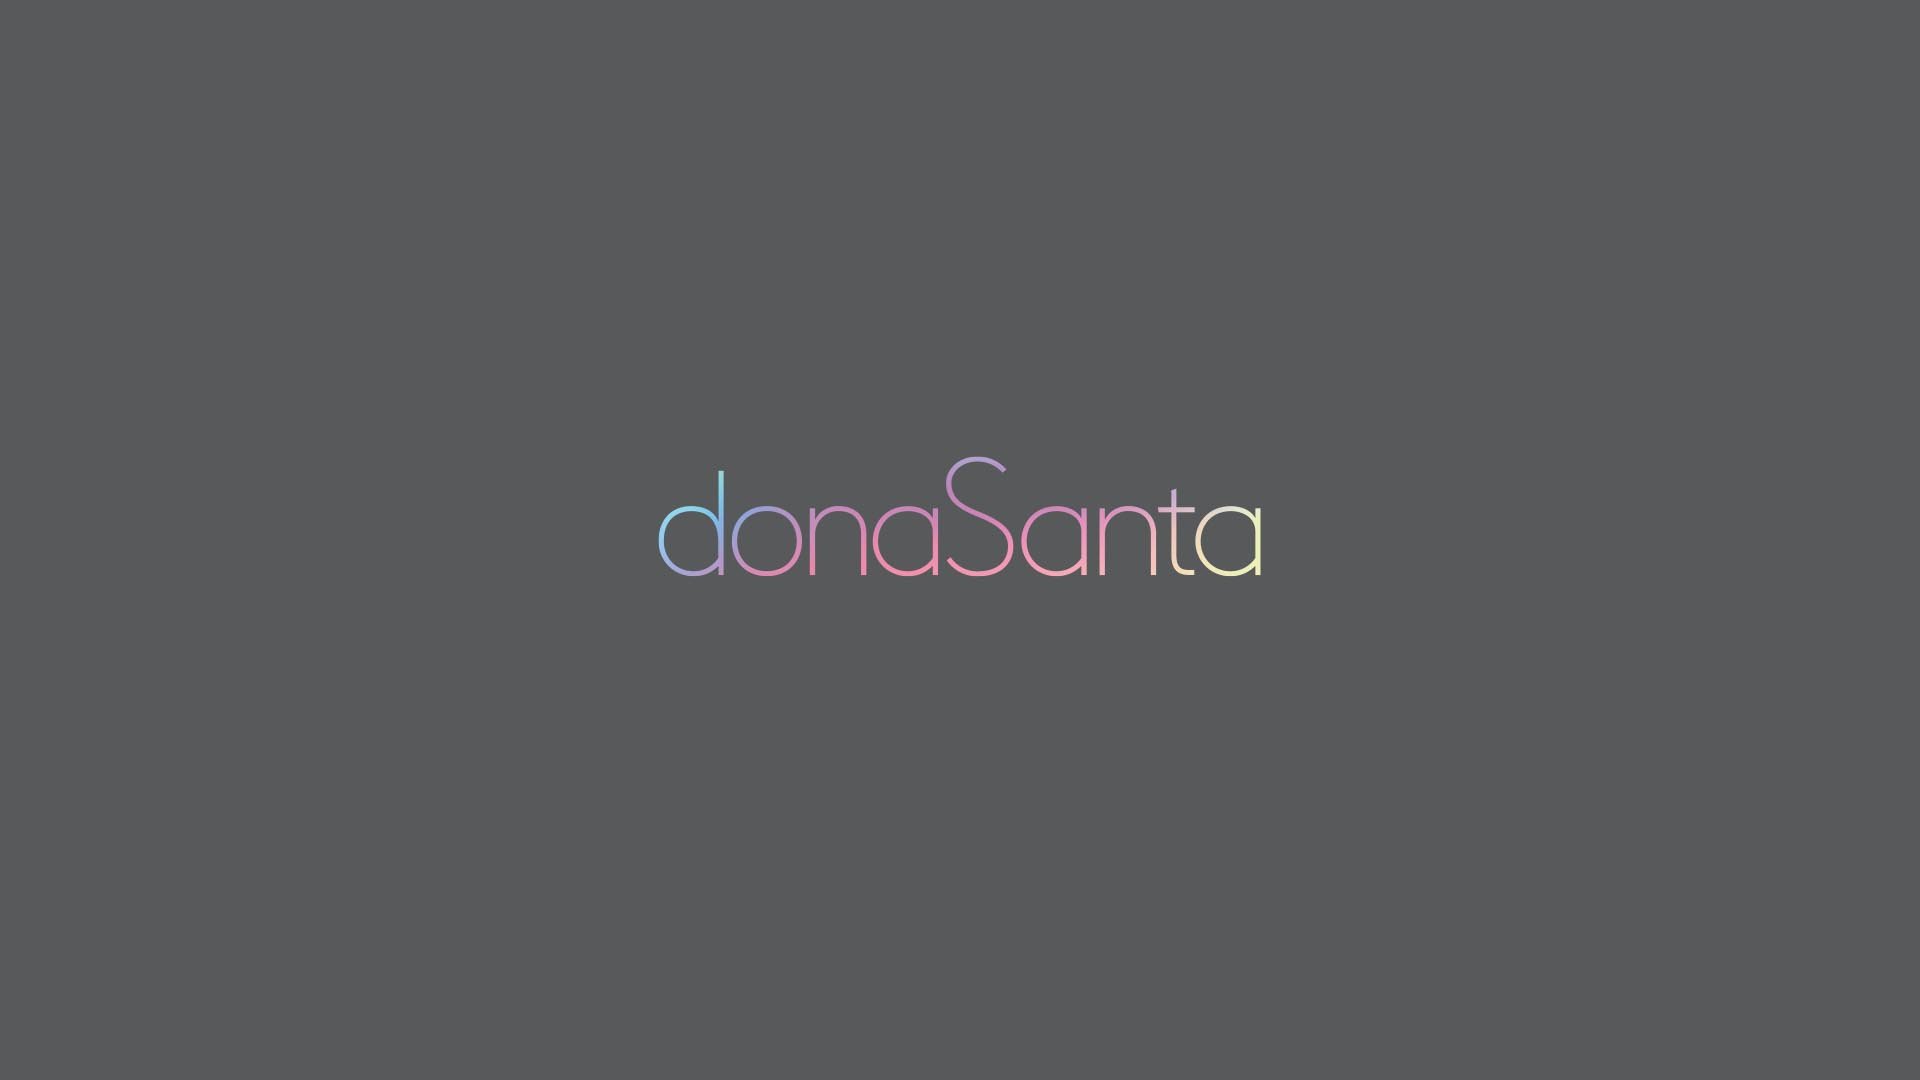 estudio-mola-dona-santa-005-logotipo.jpg